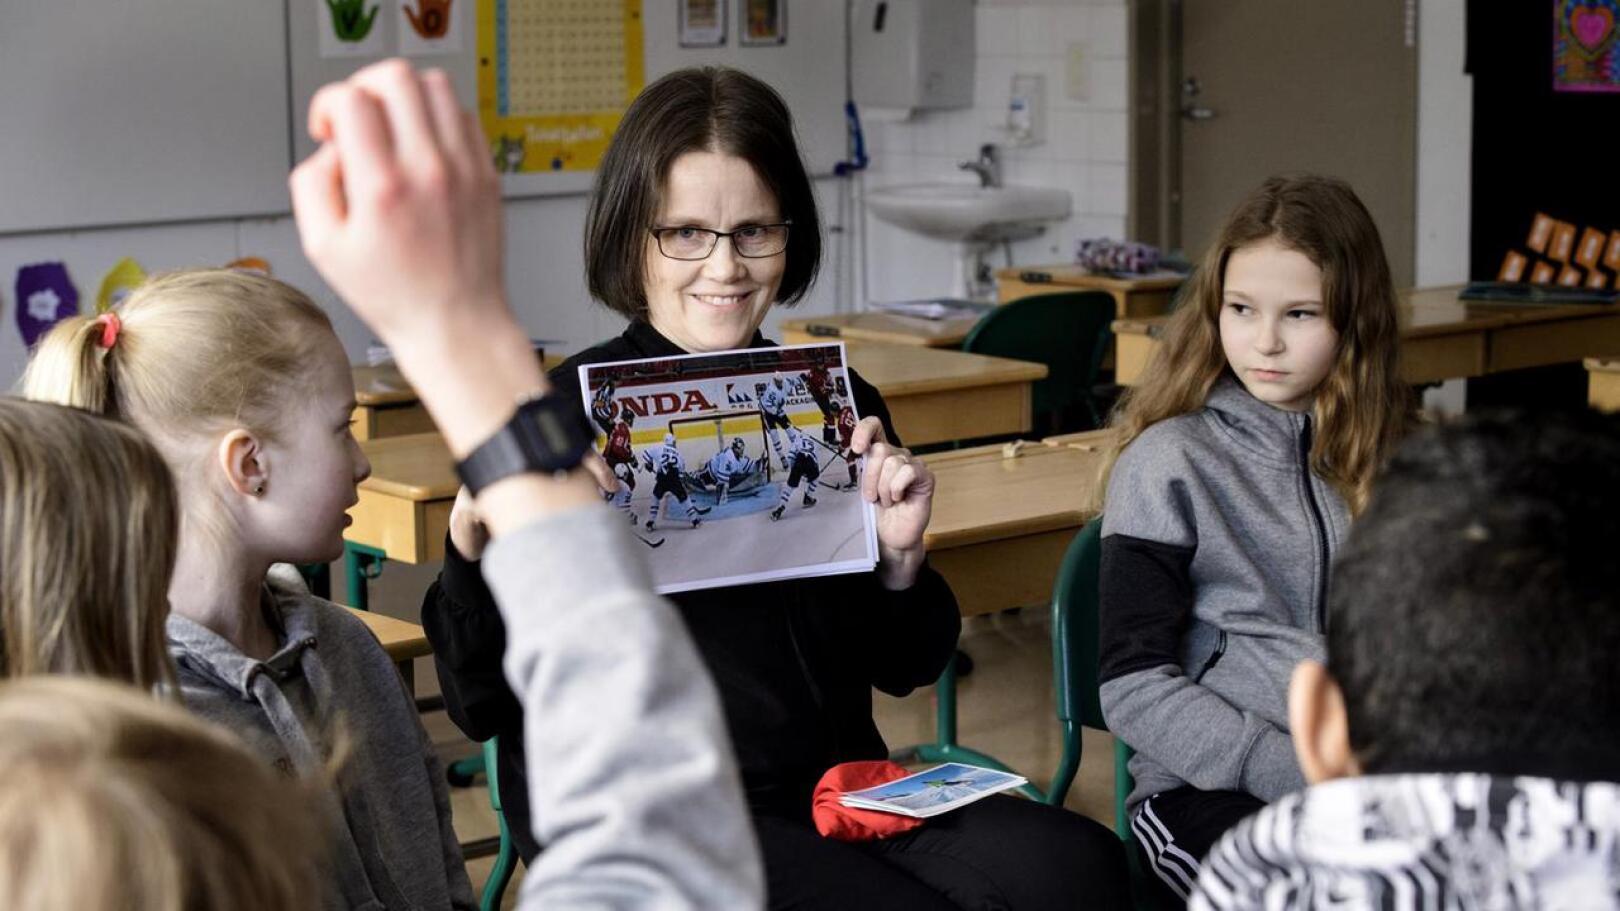 Ruotsin kieltä alettiin opettaa kerhomuodossa Itälän koulussa jo viime talvena opettaja Tiina Sundkvistin johdolla. Nyt ruotsi on valinnaisena kielenä jo ensimmäiseltä luokalta alkaen, ja enemmistö oppilaista on valinnut sen.